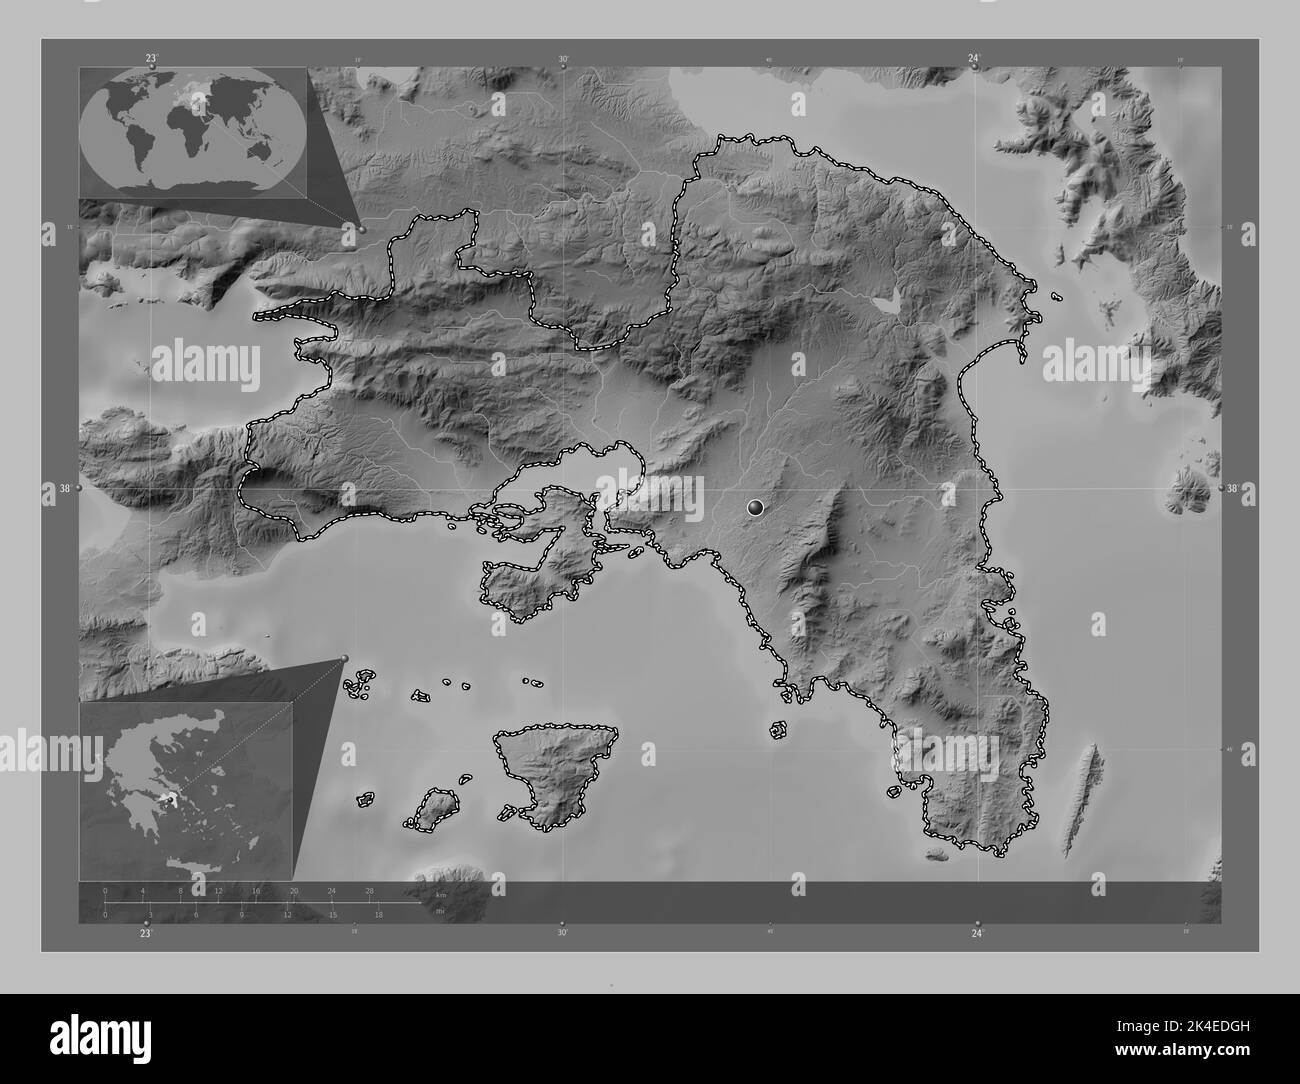 Athen, dezentrale Verwaltung Griechenlands. Höhenkarte in Graustufen mit Seen und Flüssen. Karten für zusätzliche Eckposition Stockfoto